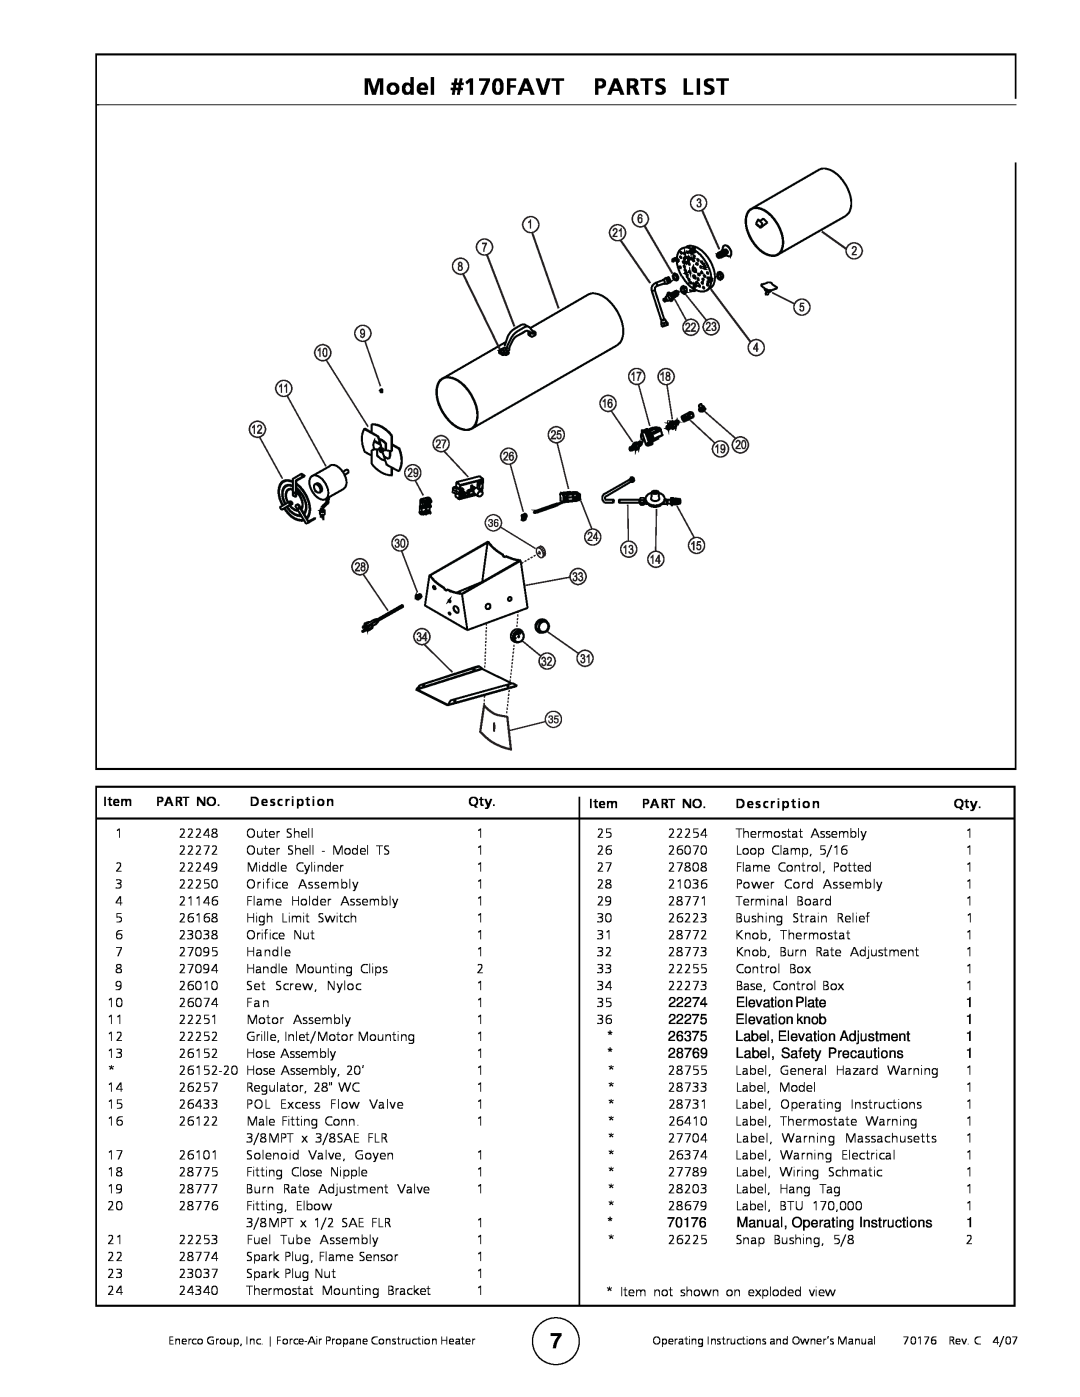 Enerco MH170FAVT operating instructions Model #170FAVT PARTS LIST, Description 